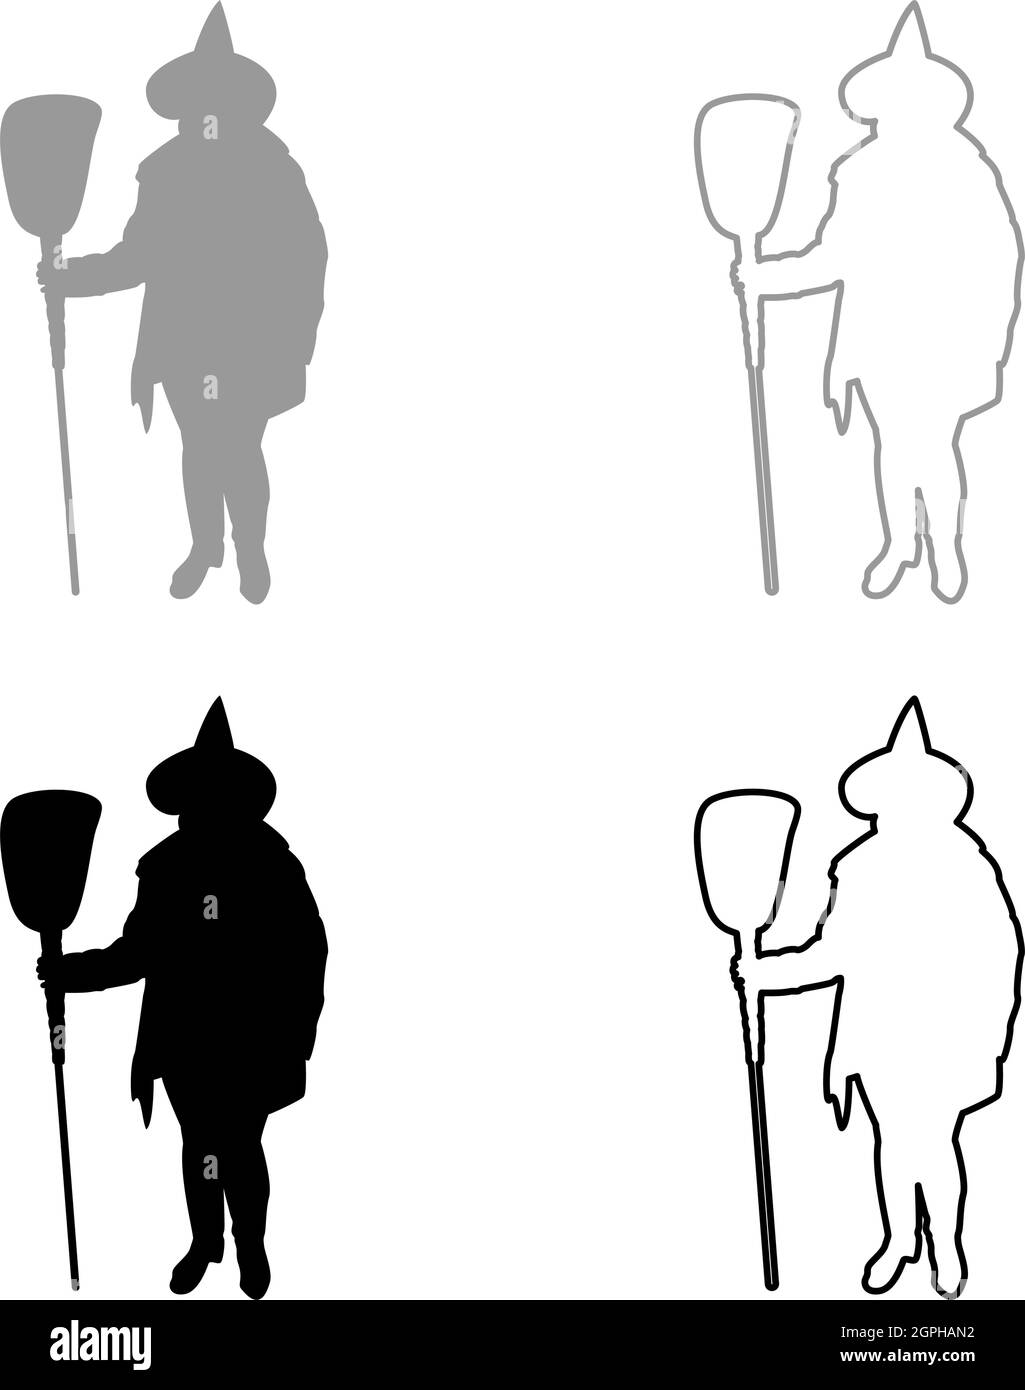 Fée Wizard Witch debout avec un sujet de balai pour Halloween concept silhouette gris noir couleur vecteur illustration image de style de contour plein Illustration de Vecteur